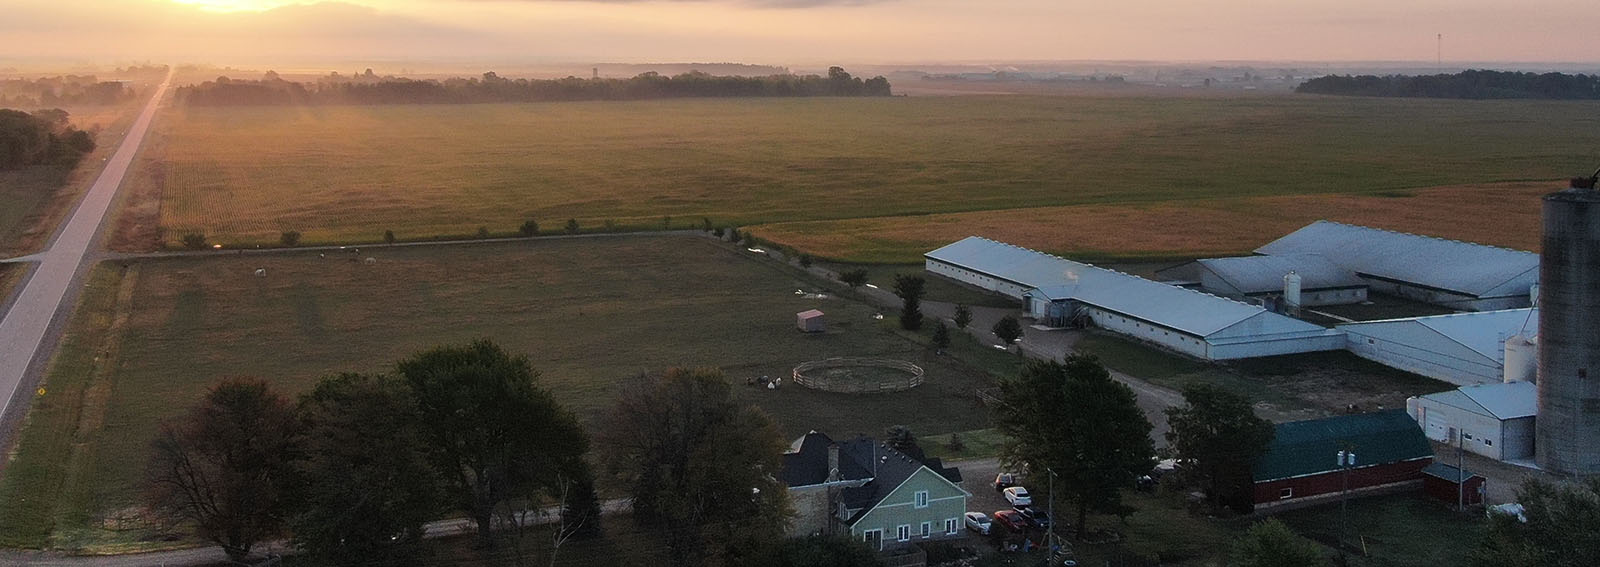 Sunrise over a farm